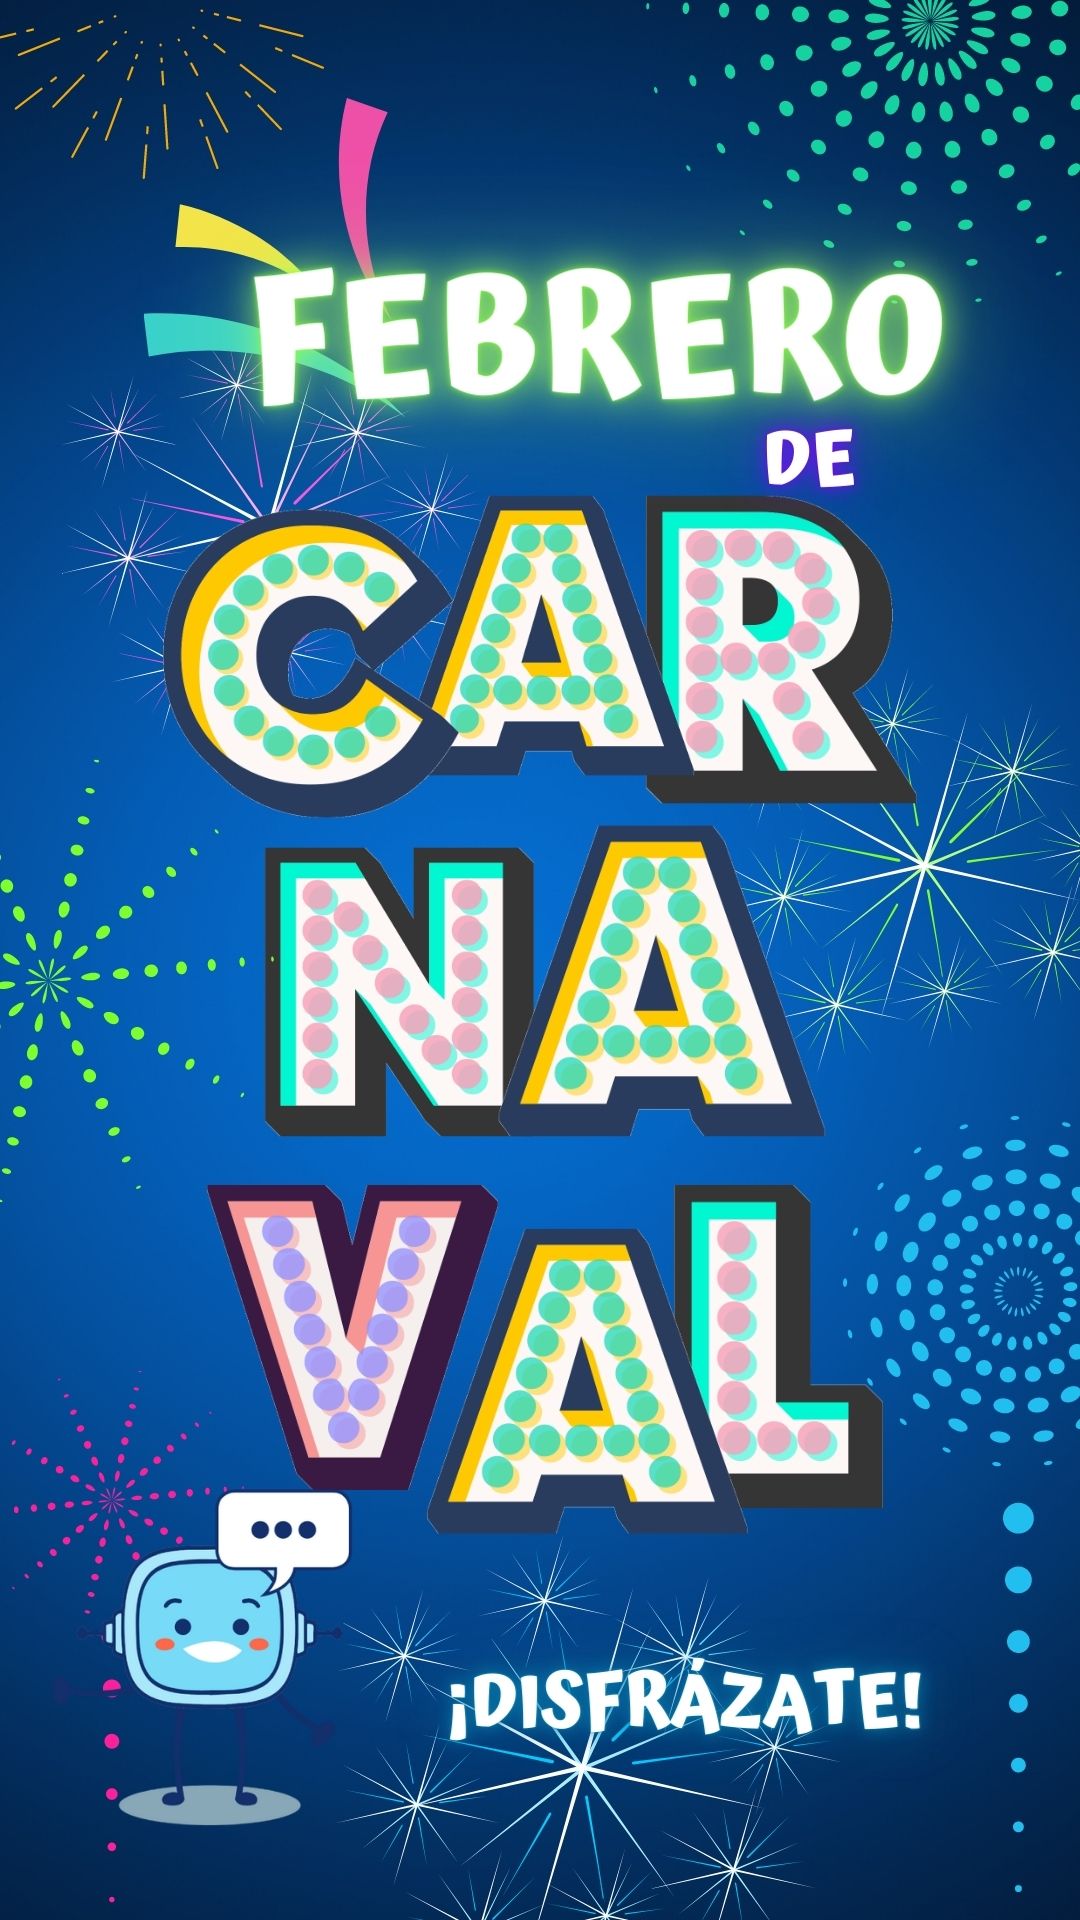 La imagen muestra un cartel de febrero en carnaval y Retor que dice ¡disfrázate!